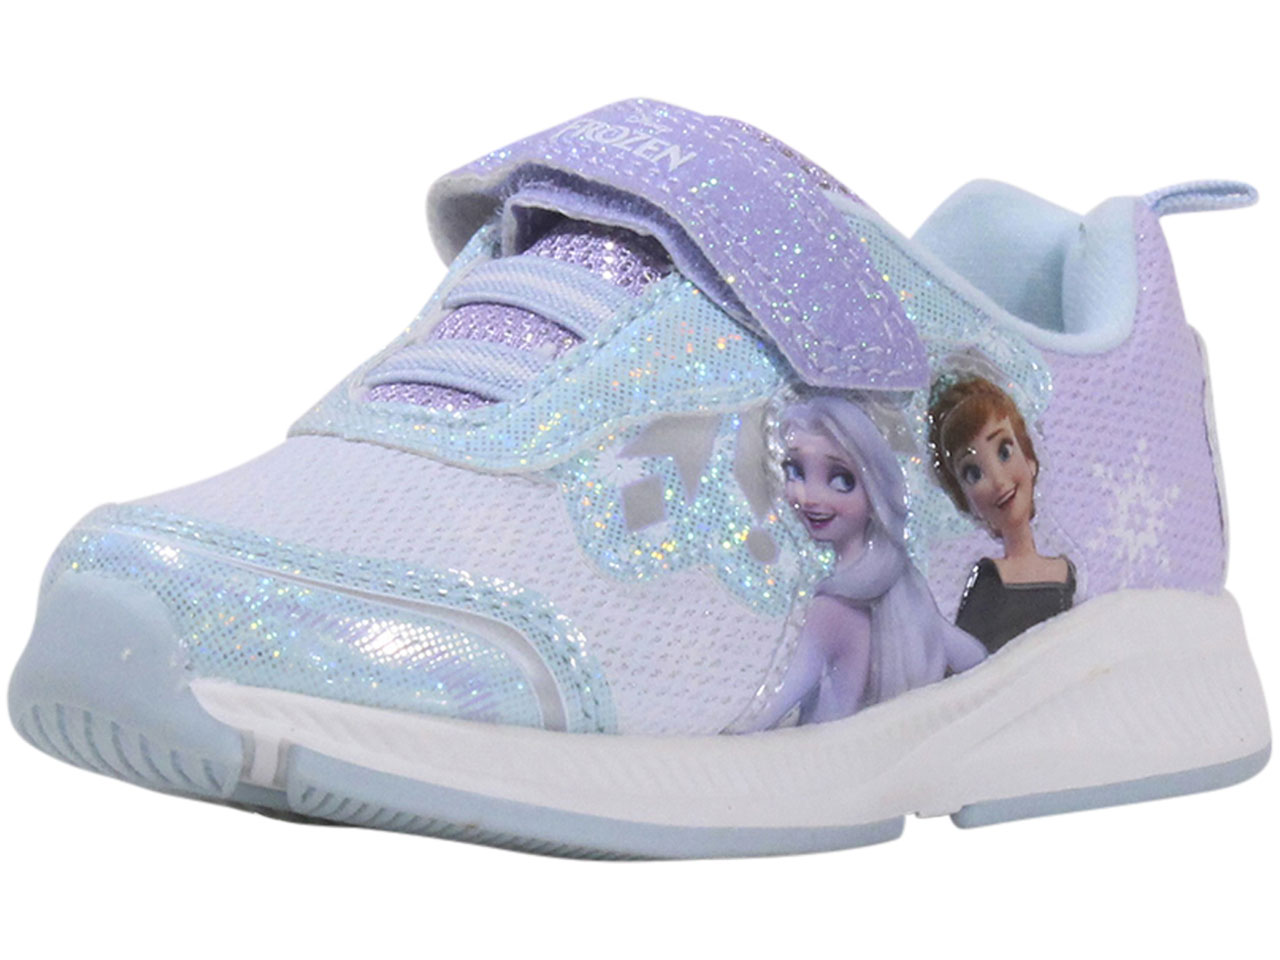 Alperne Assimilate Taiko mave Disney Toddler/Little Kids Girl's Frozen Sneakers Light Up | JoyLot.com